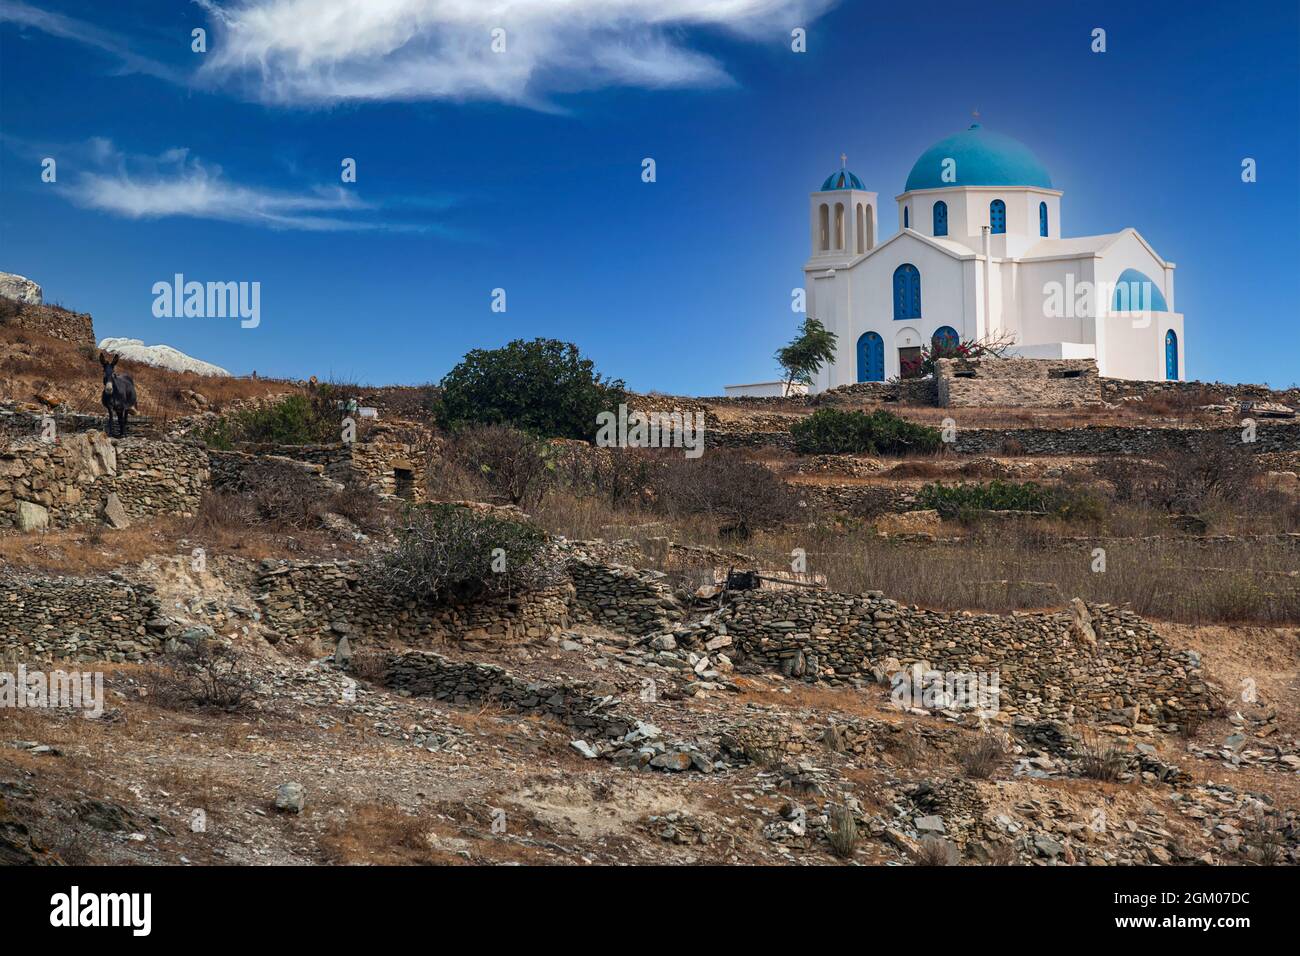 St. Georgios Griechische Kirche auf dem Gipfel des Hügels mit terrassenförmig angelegten Bauernhöfen und Steinzäunen unten und einem Esel auf der linken Seite Stockfoto